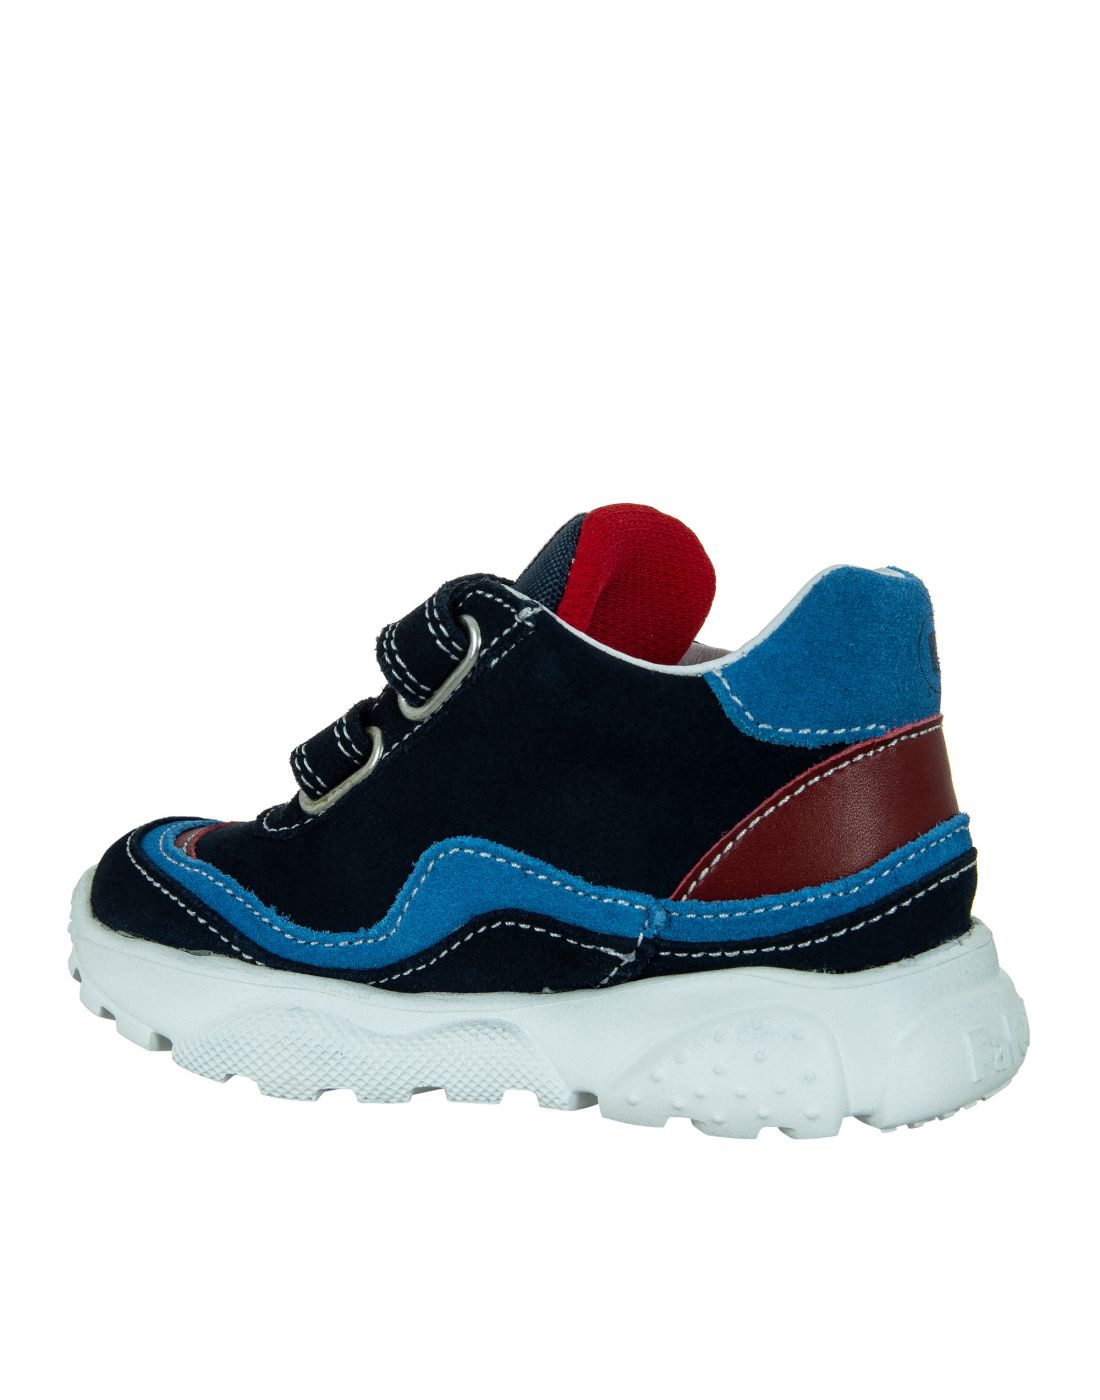 Παιδικά Sneakers Falcoto, Naturino & Falcotto, 23270148 | LapinKids.com |  LAPIN KIDS